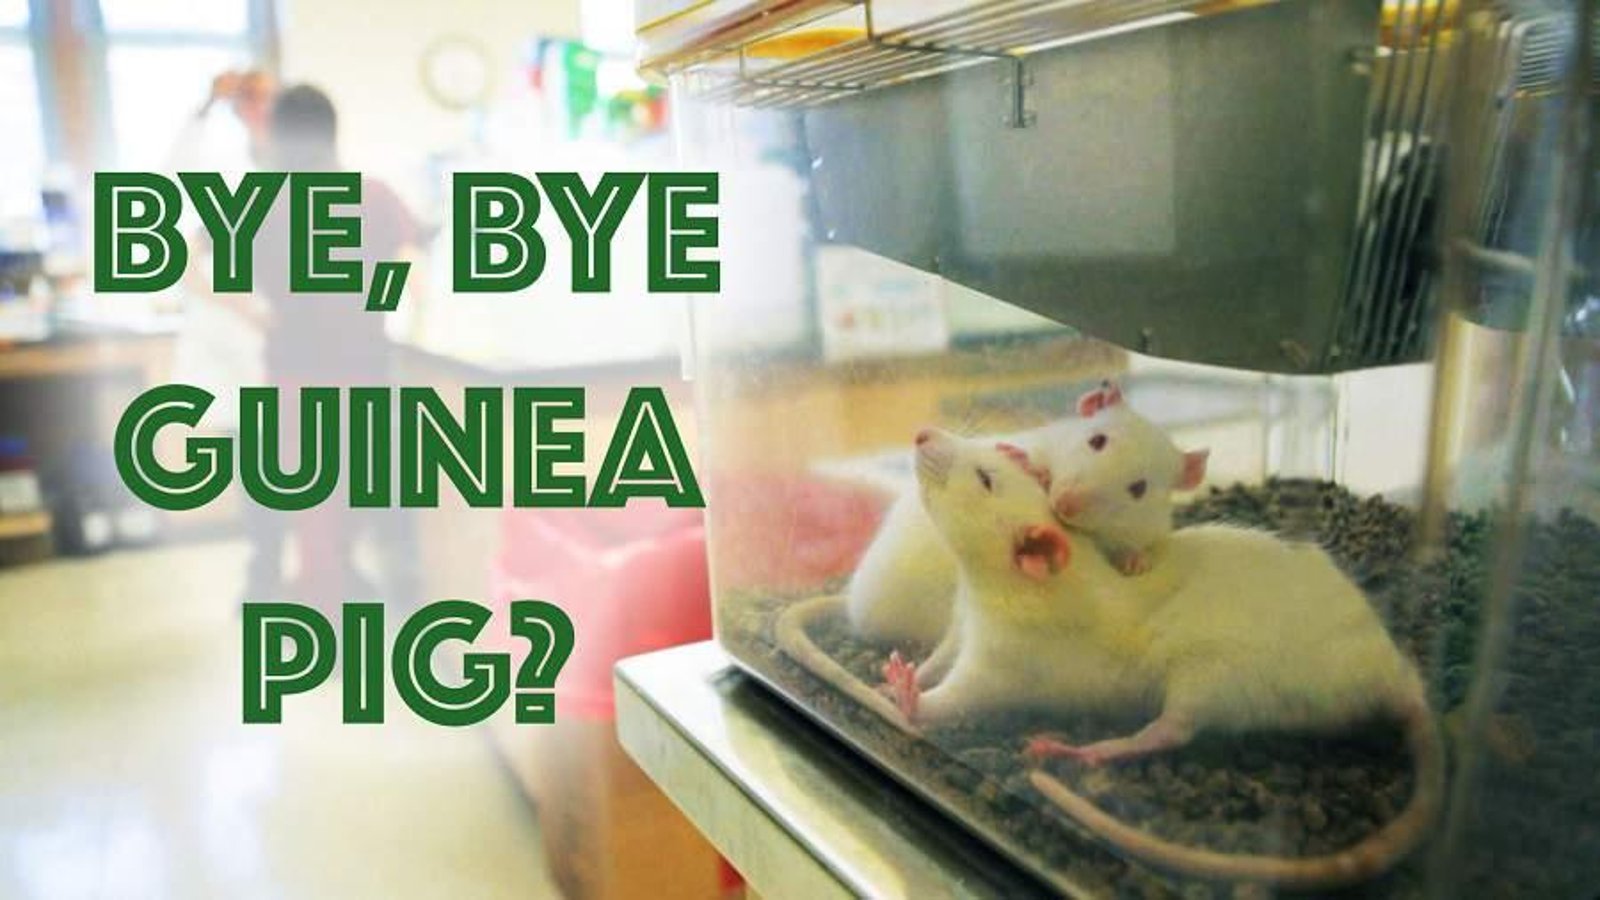 Bye Bye Guinea Pig - Alternatives to Animal Testing